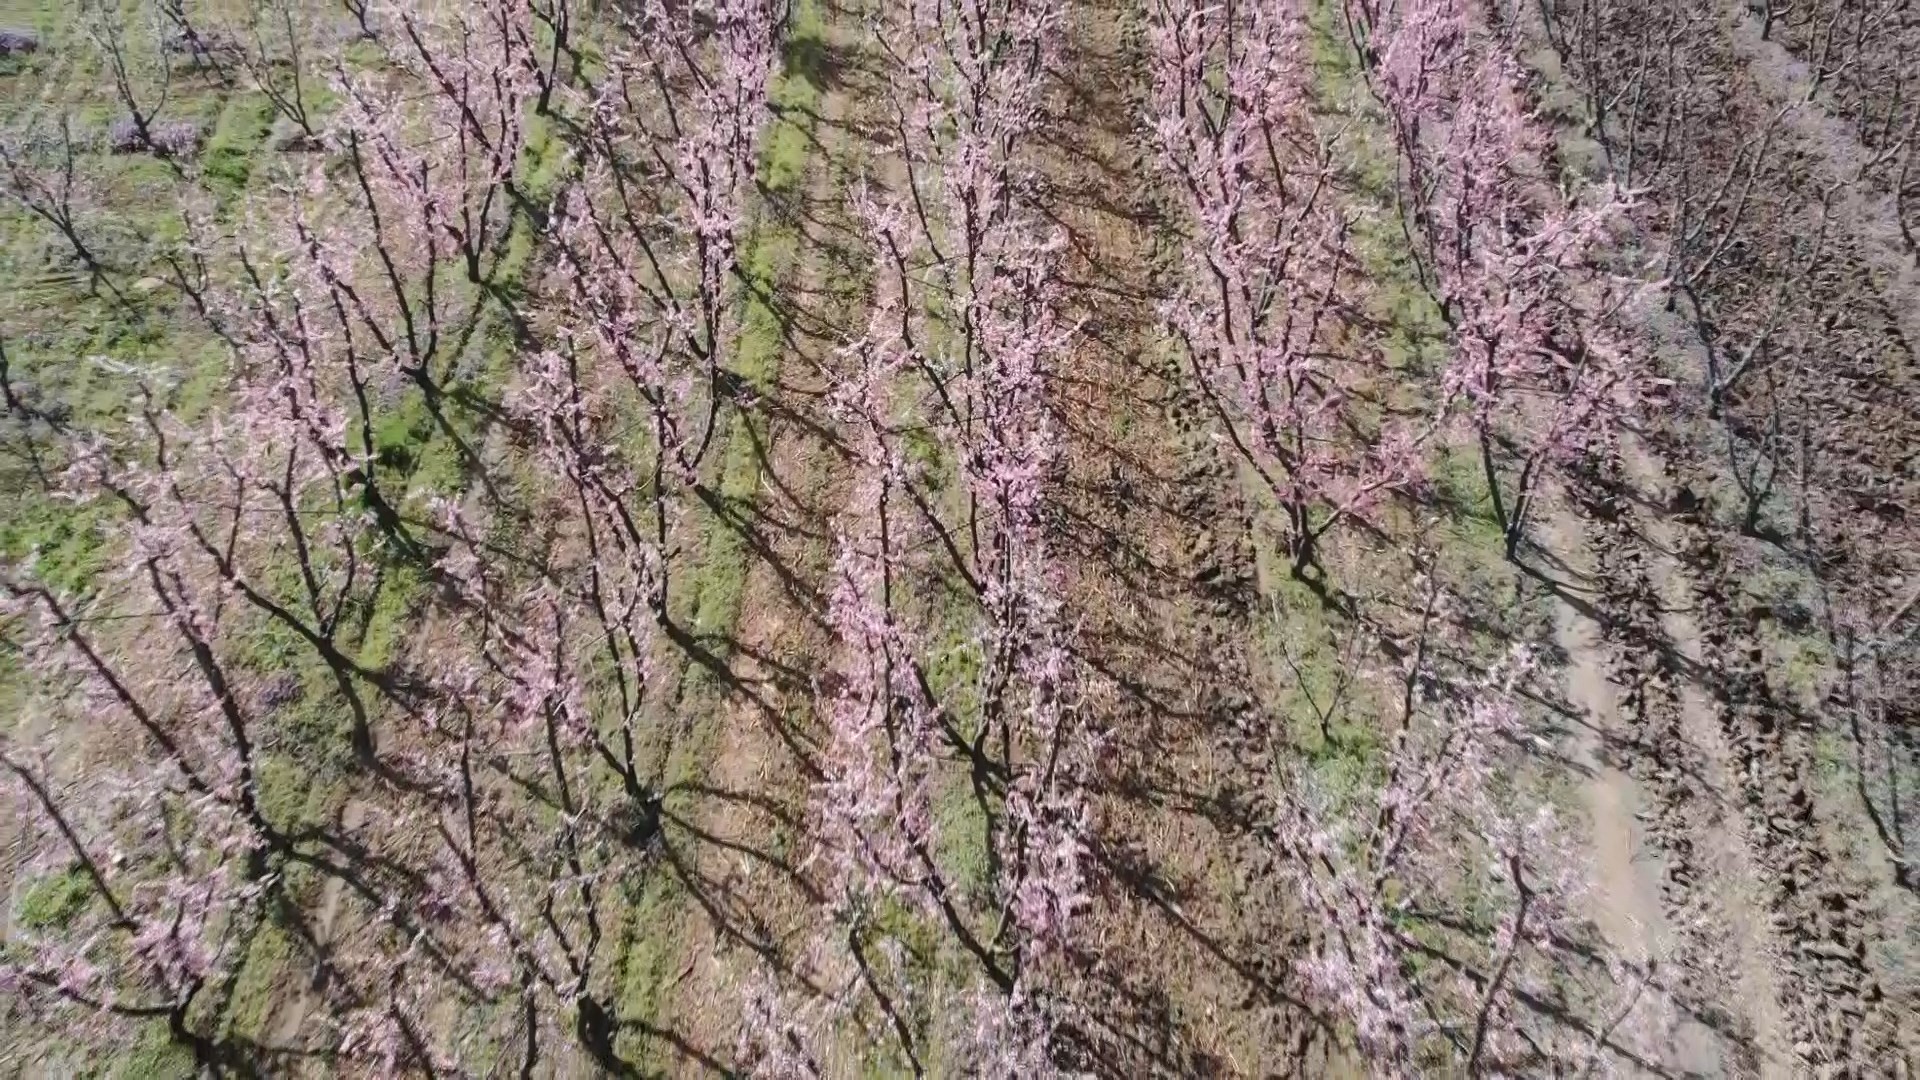 Çiçek açan meyve ağaçları kartpostallık görüntüler oluşturdu. Masalsı görüntüler dron ile görüntülendi 10